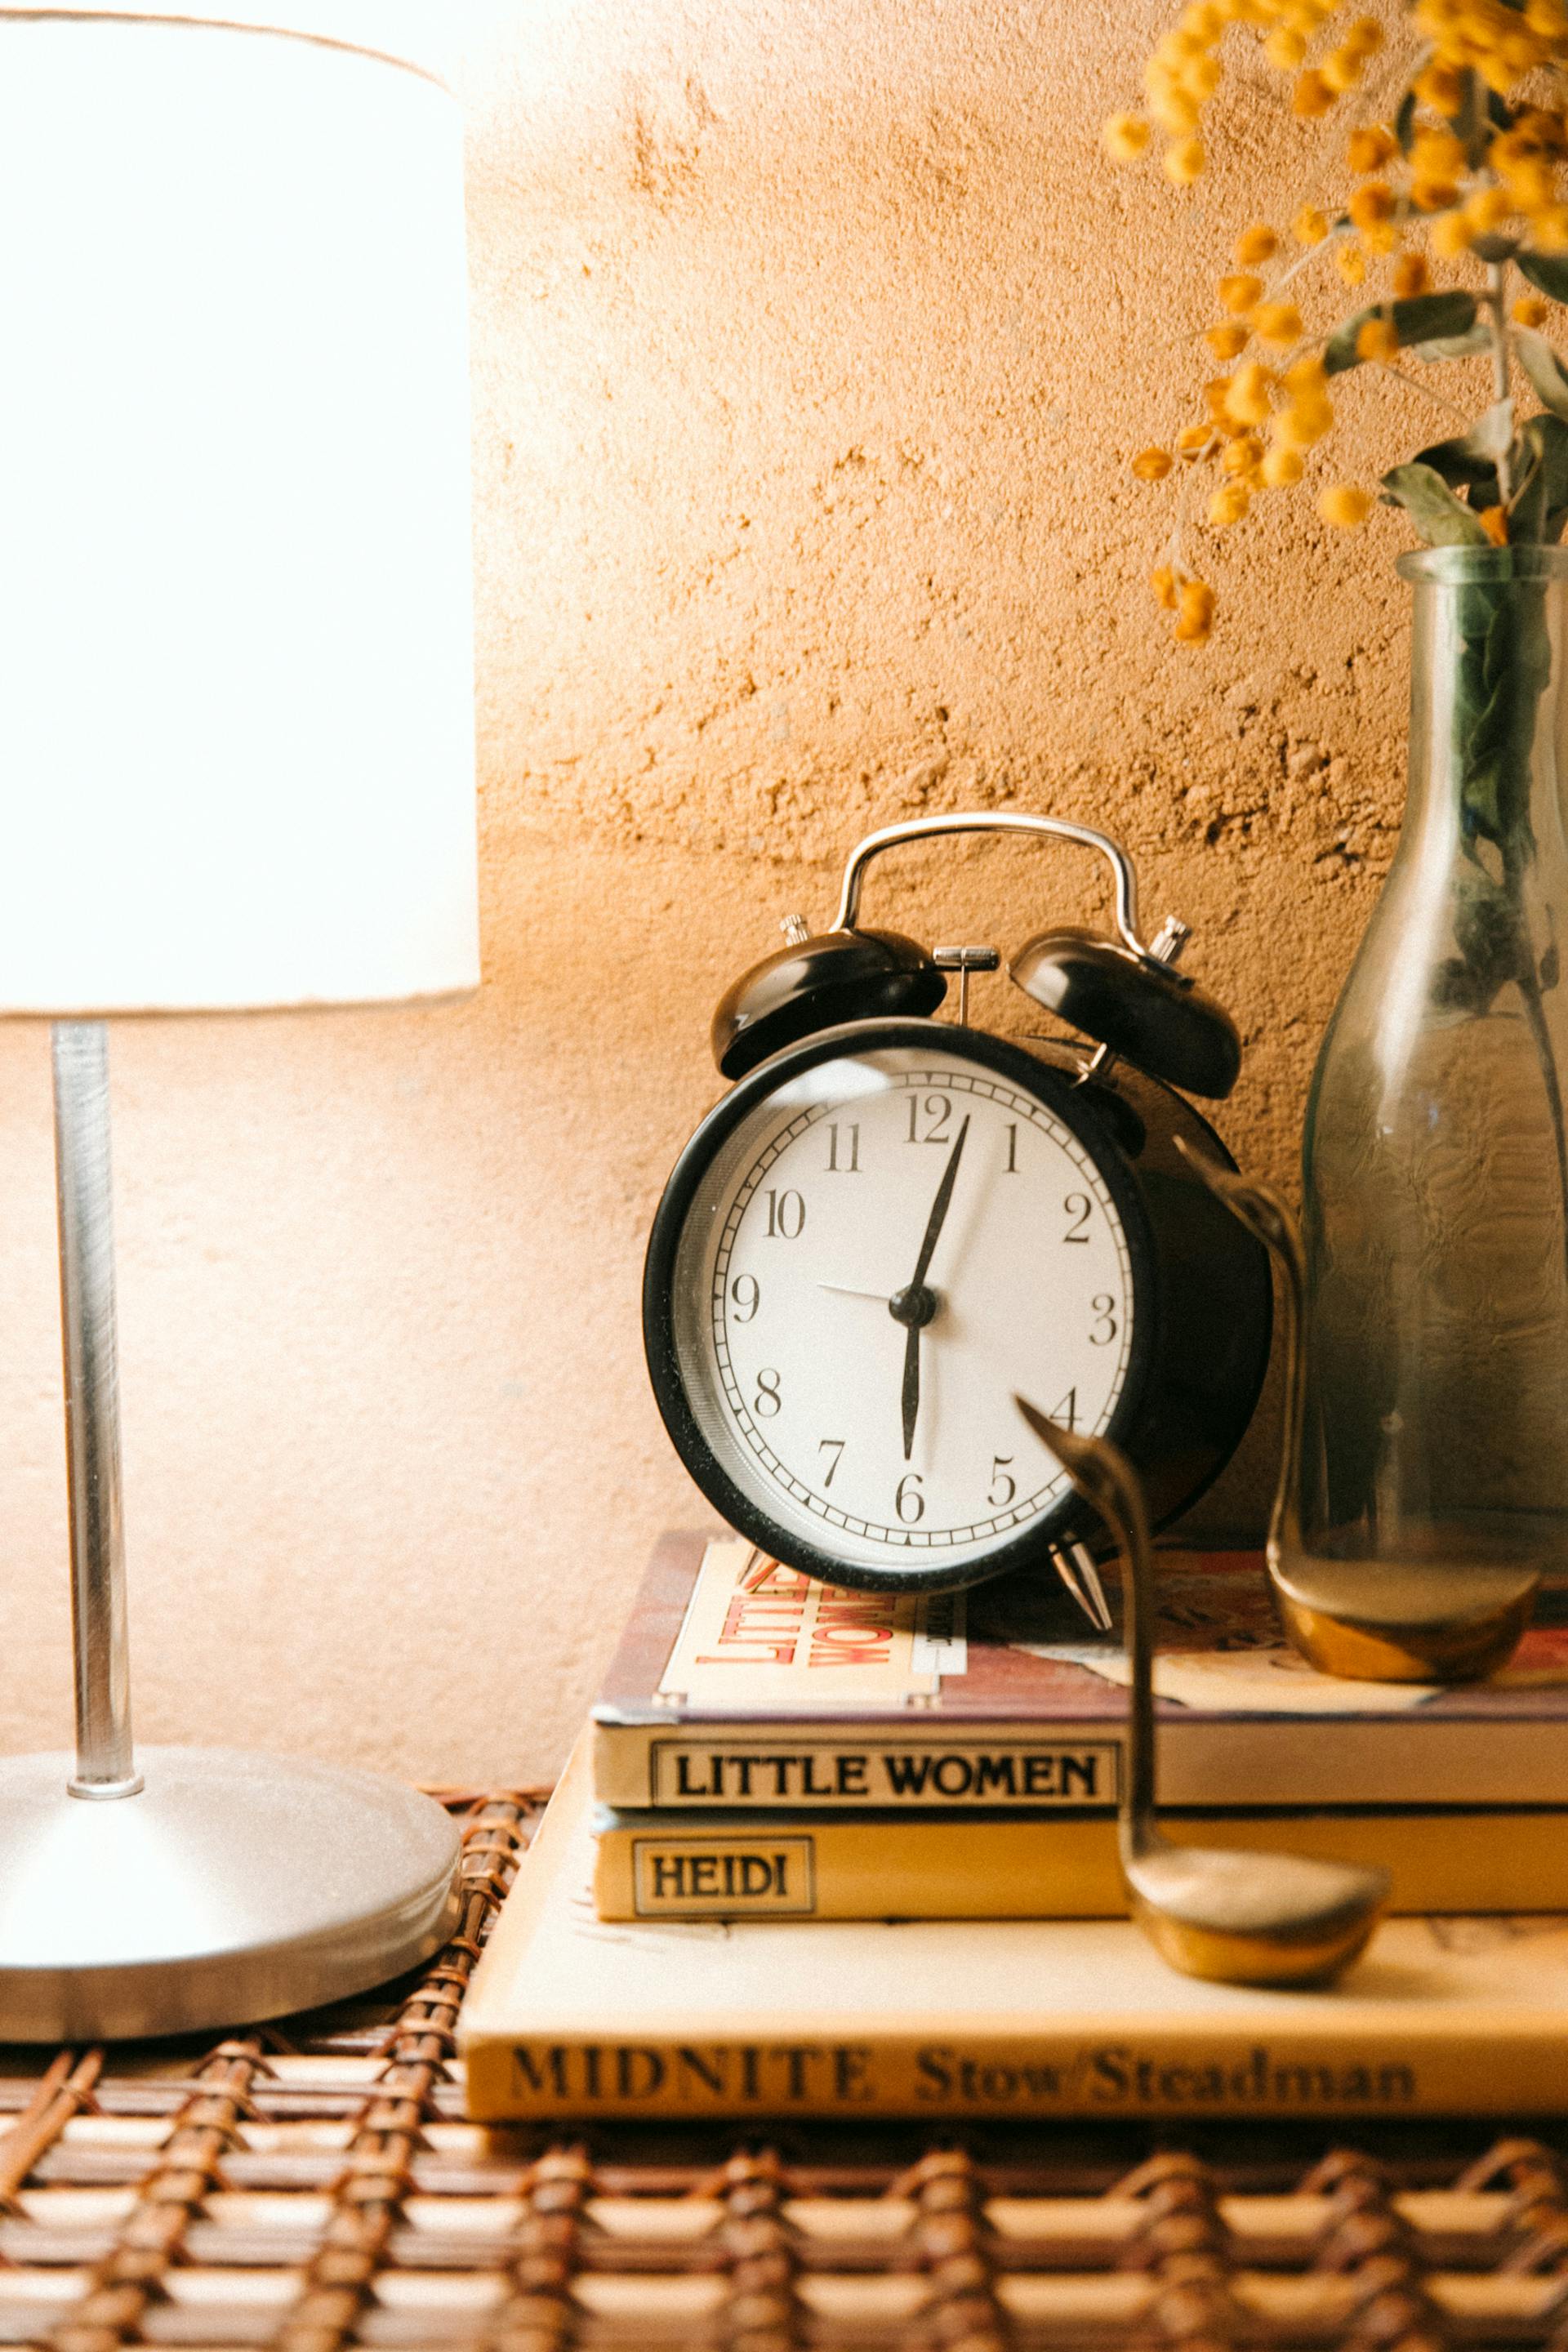 Un réveil vintage et une lampe lumineuse placés sur une table de chevet | Source : Pexels